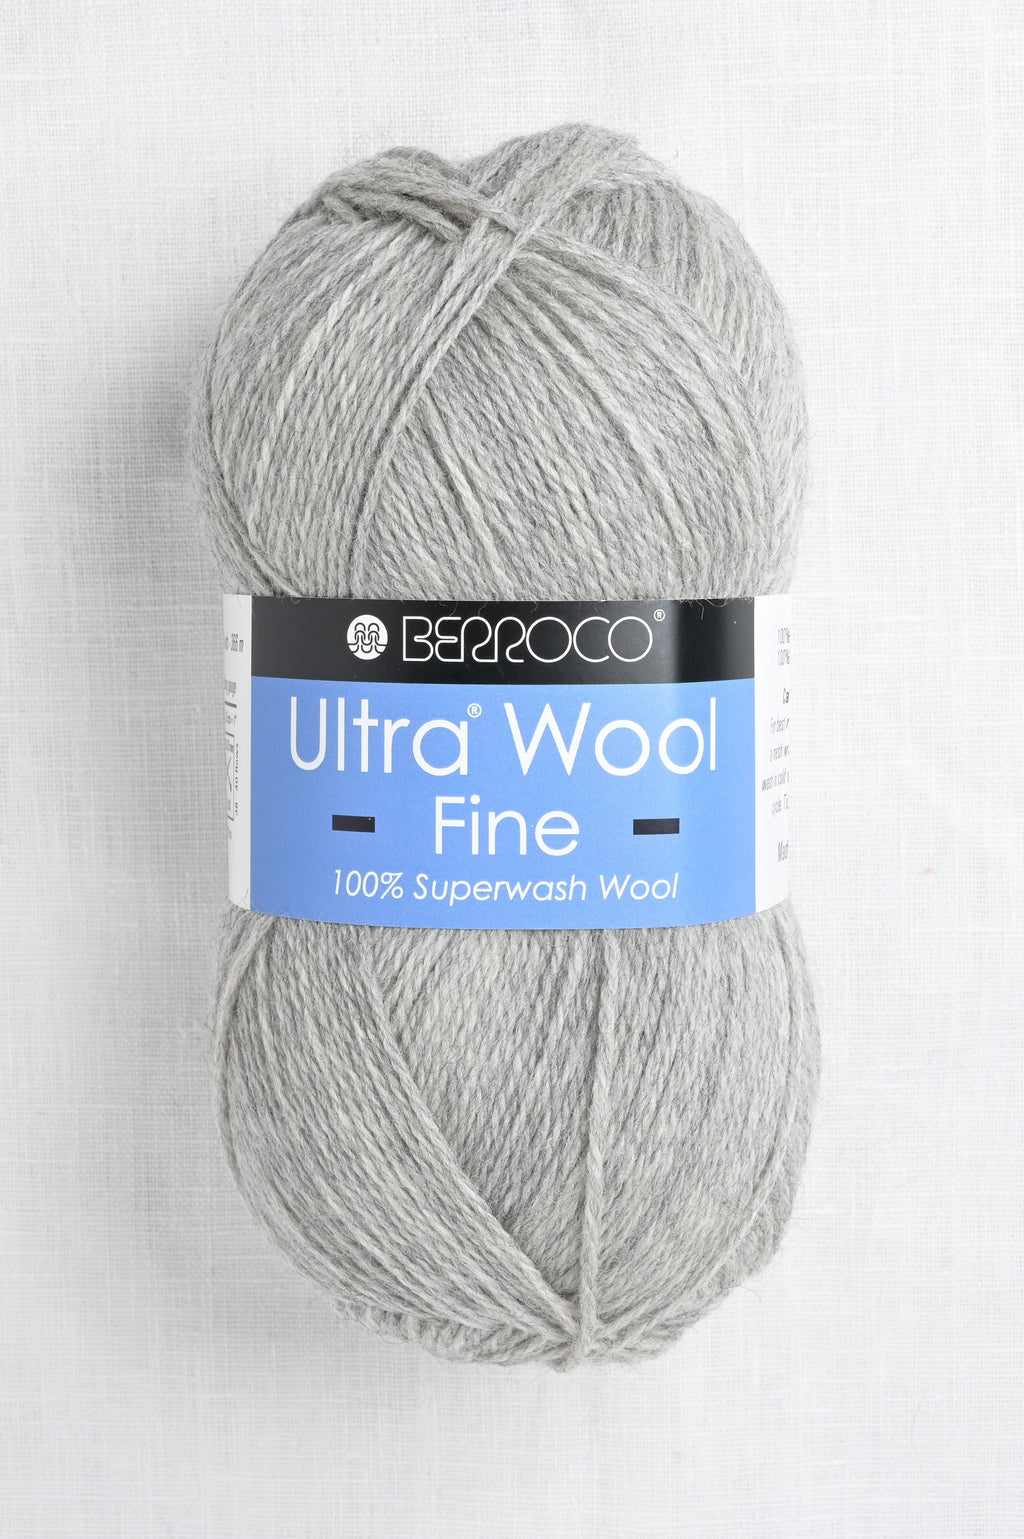 berroco ultra wool fine 53108 frost